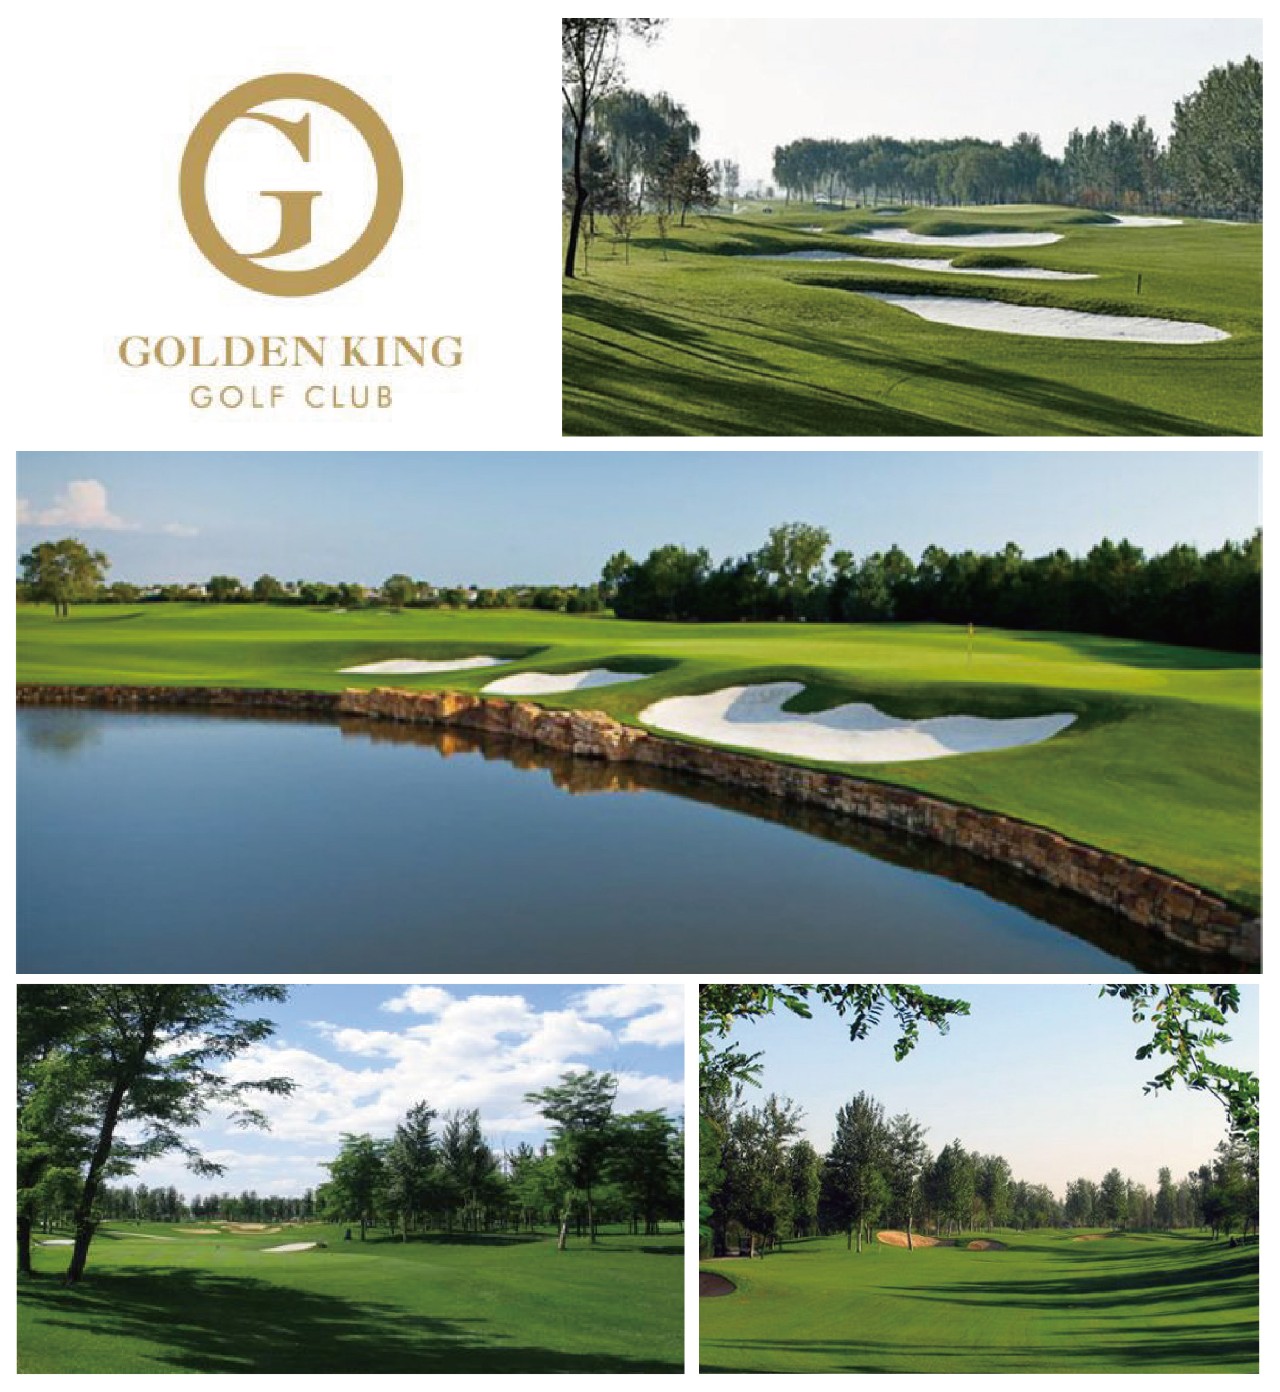 是一座国际性会员制高尔夫俱乐部,球场坐落于中国北京房山区琉璃河,距